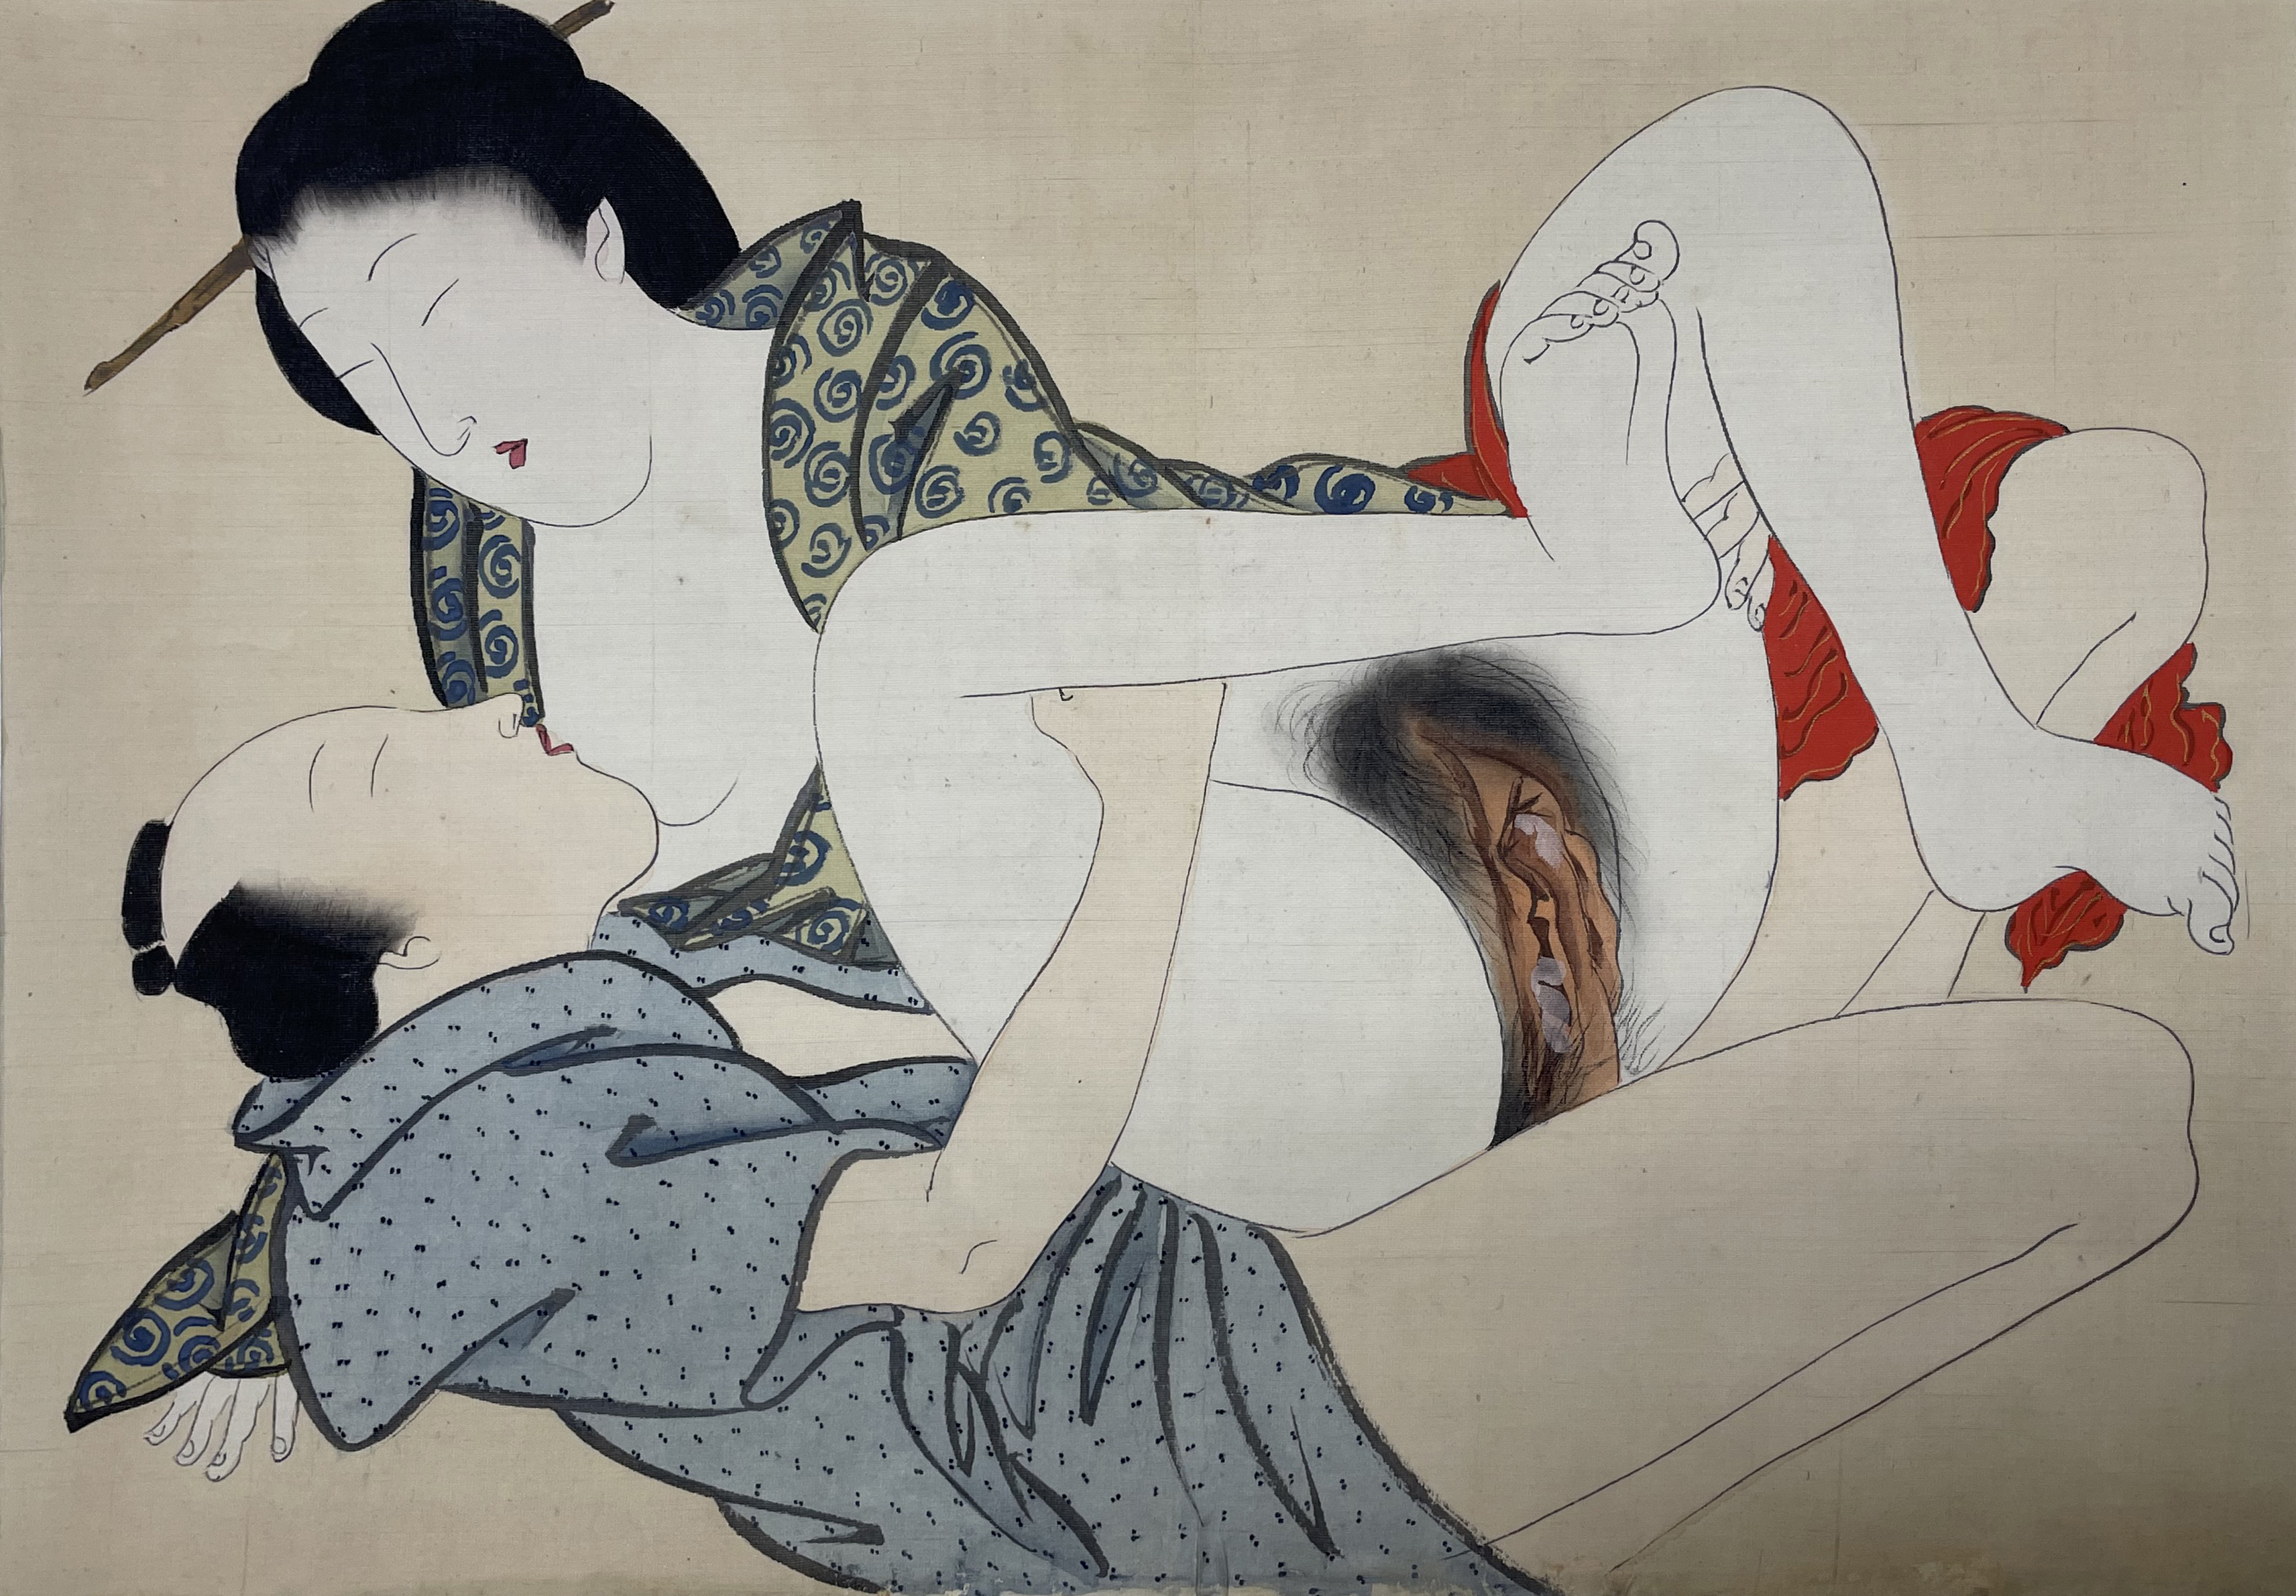 【日本版画】扬州周延 绢布春画 1891年 35 x 25cm